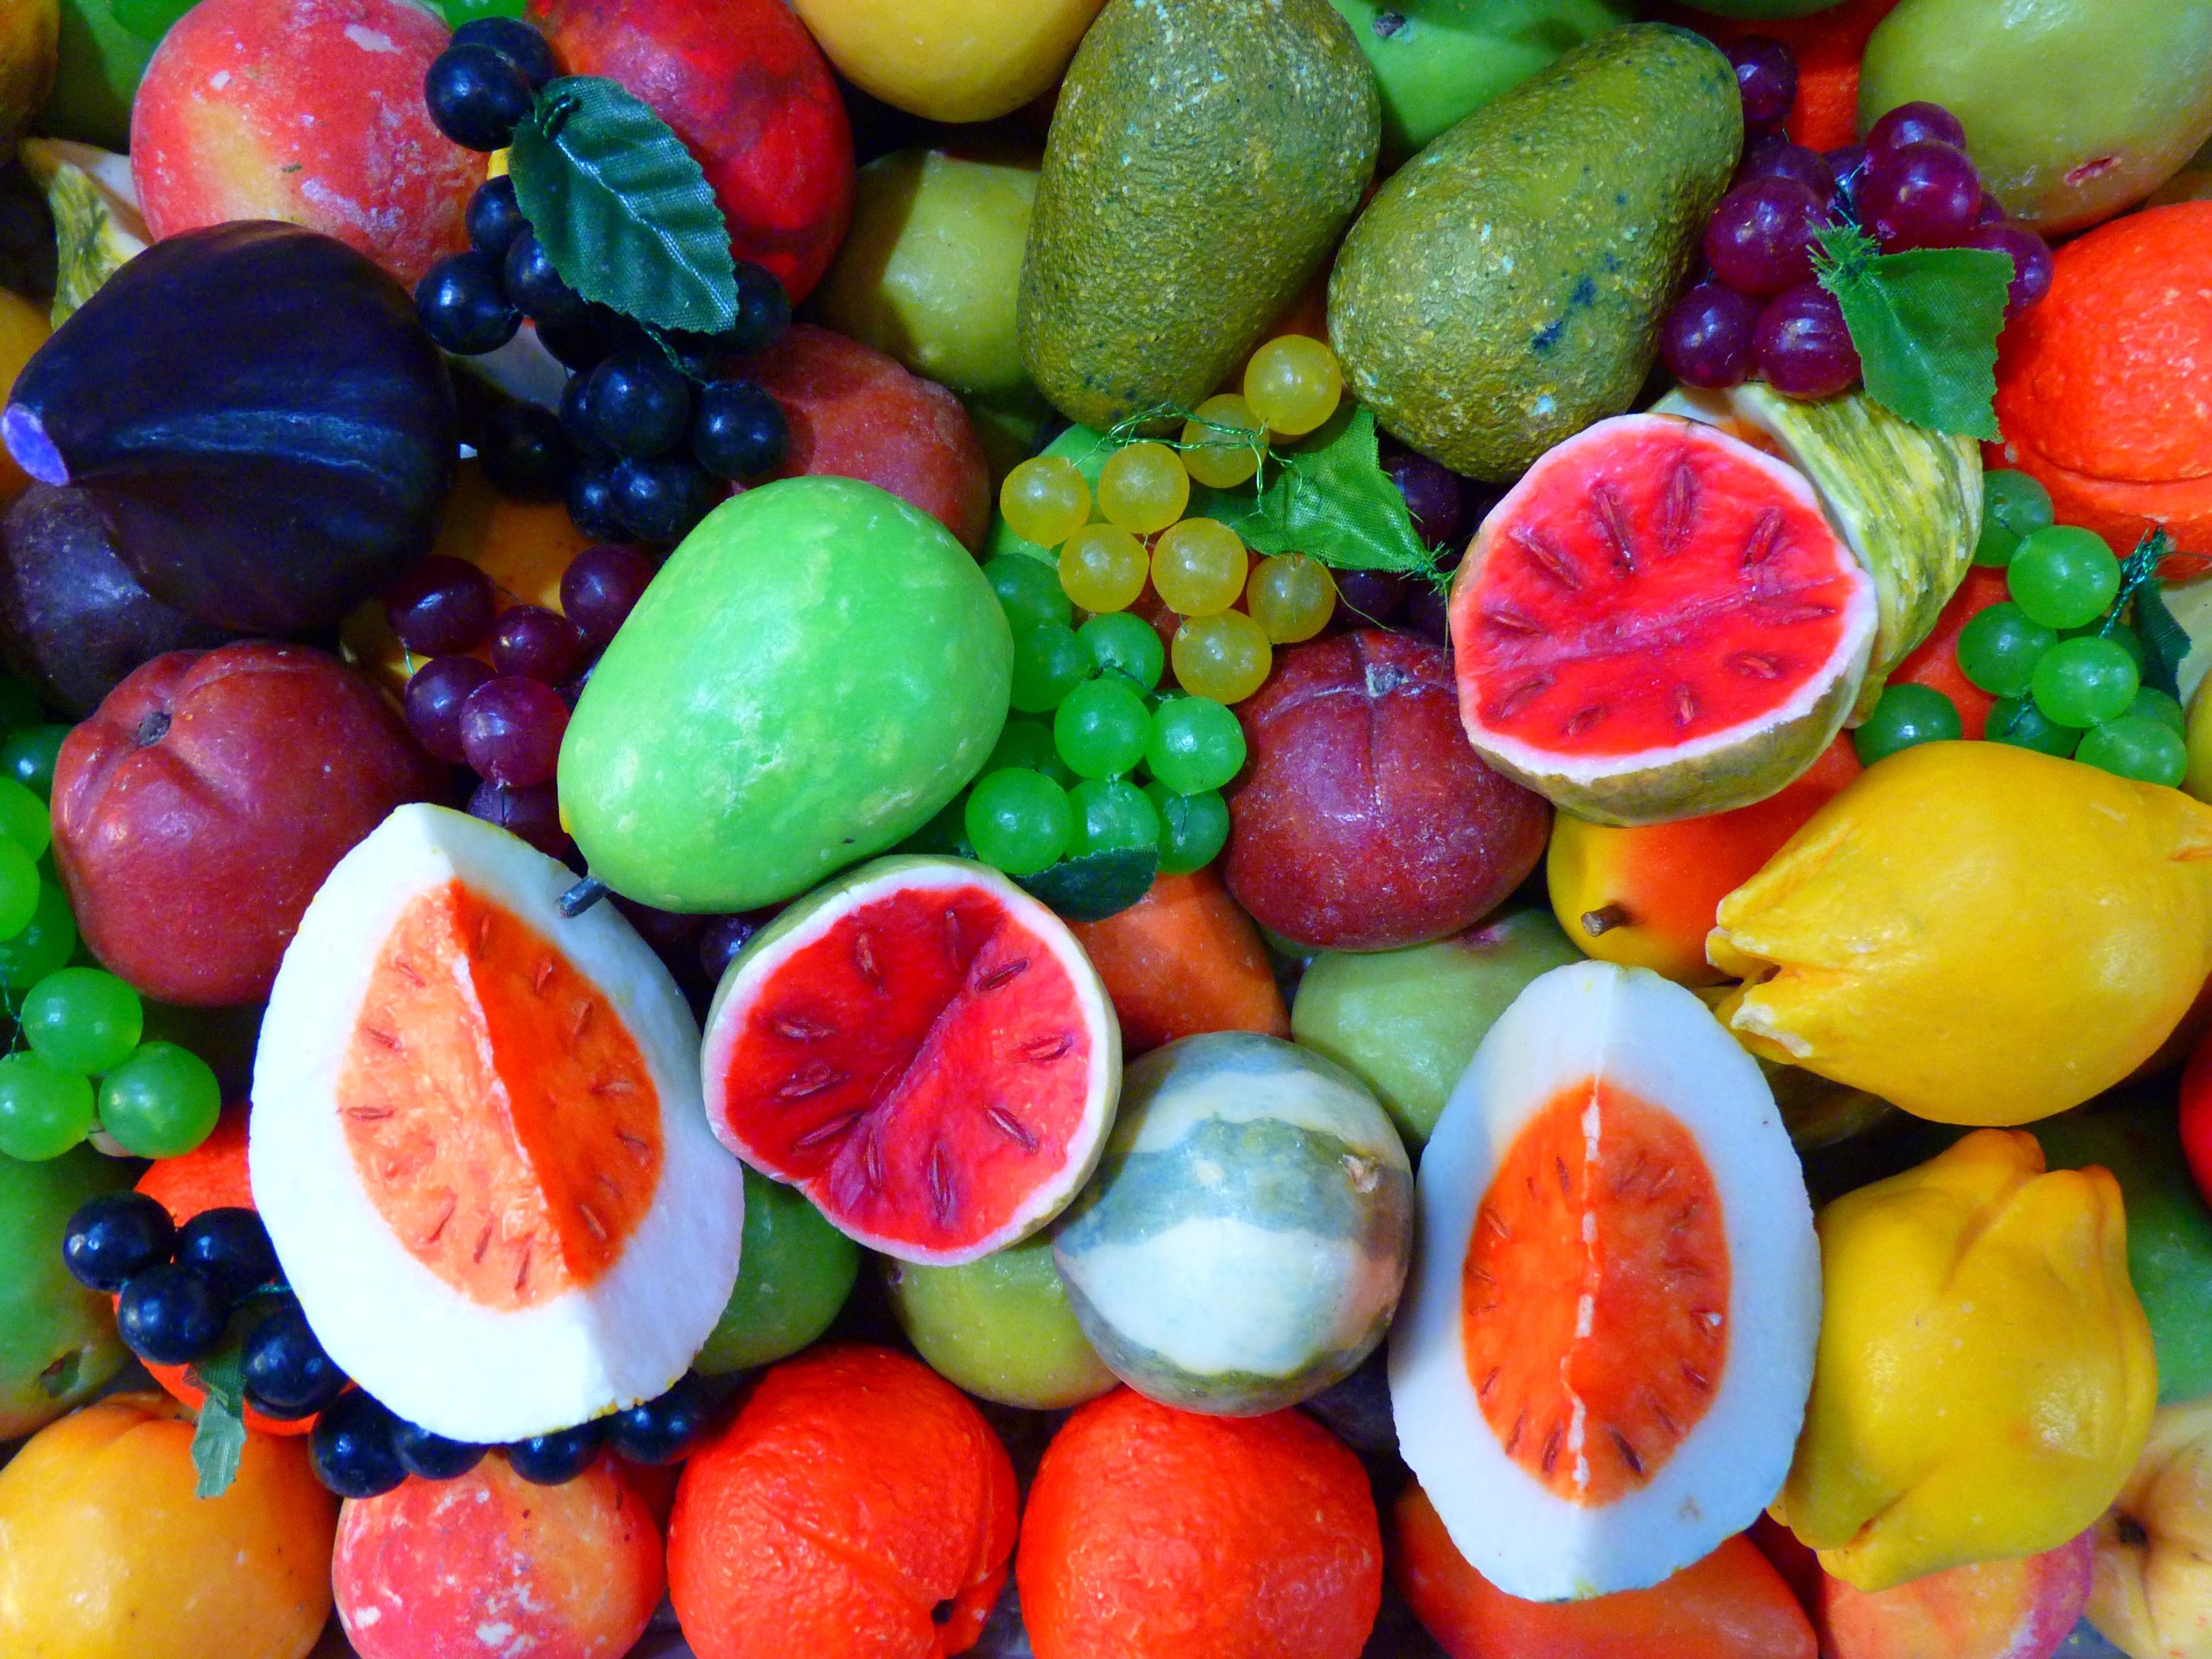 Pestki tych owoców i warzyw mogą być groźne dla zdrowia